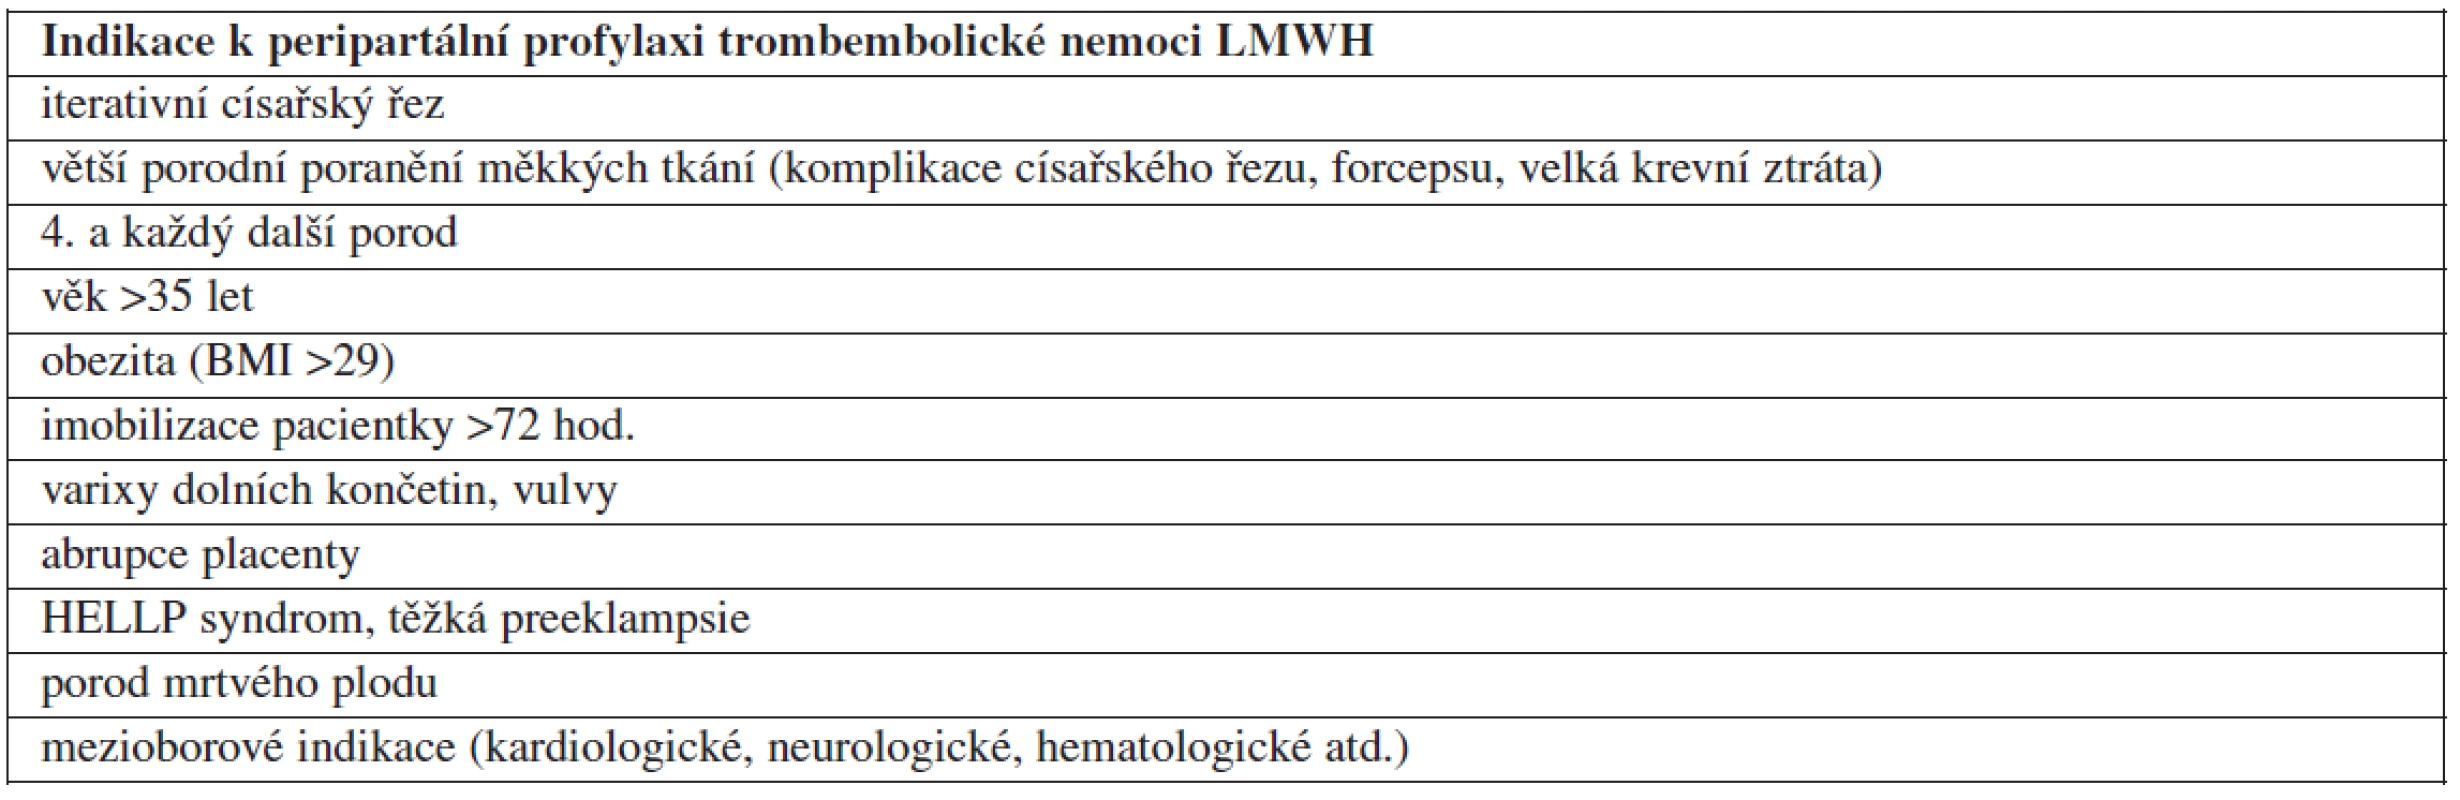 Indikace k peripartální profylaxi trombembolické nemoci LMWH